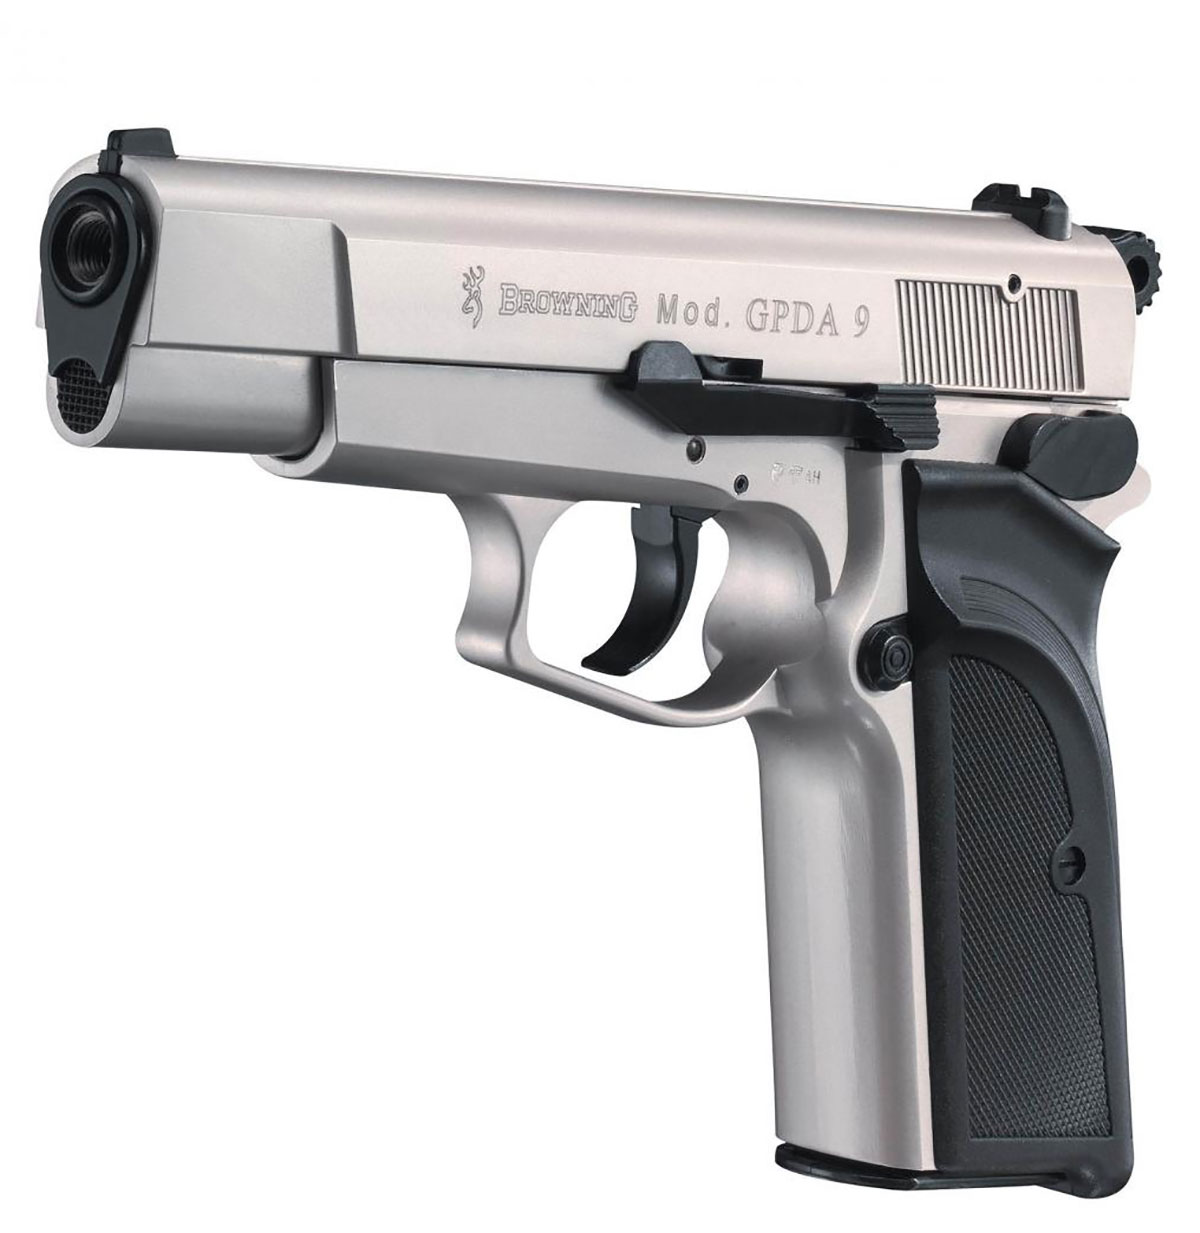 Browning GPDA 9 nickel - silber - die Vorderansicht der Gaspistole GPDA9 